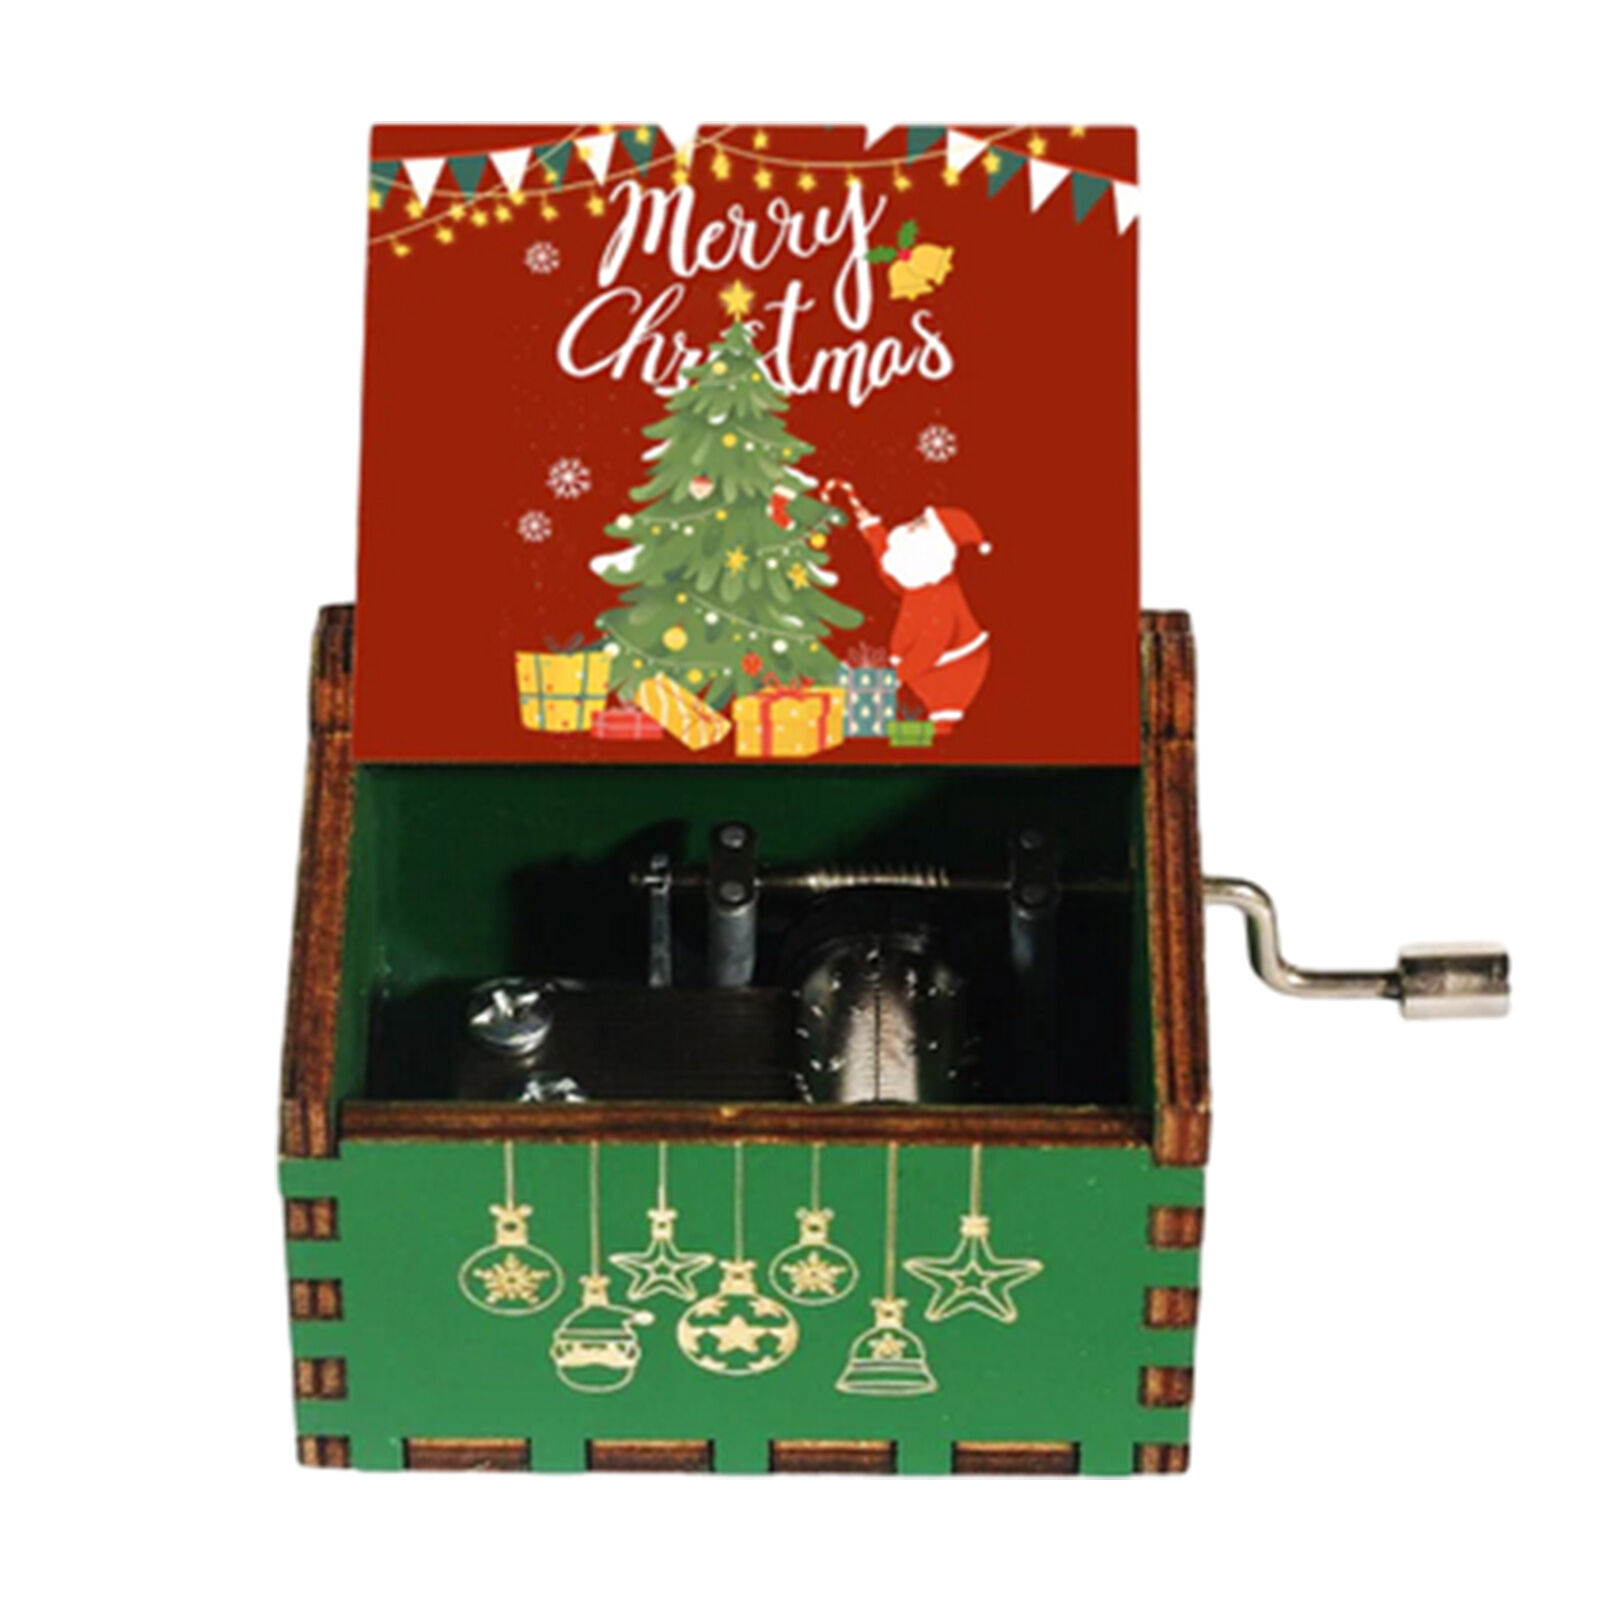 Christmas Music Box Hand Crank Small Vintage Wooden Christmas Decor Gift